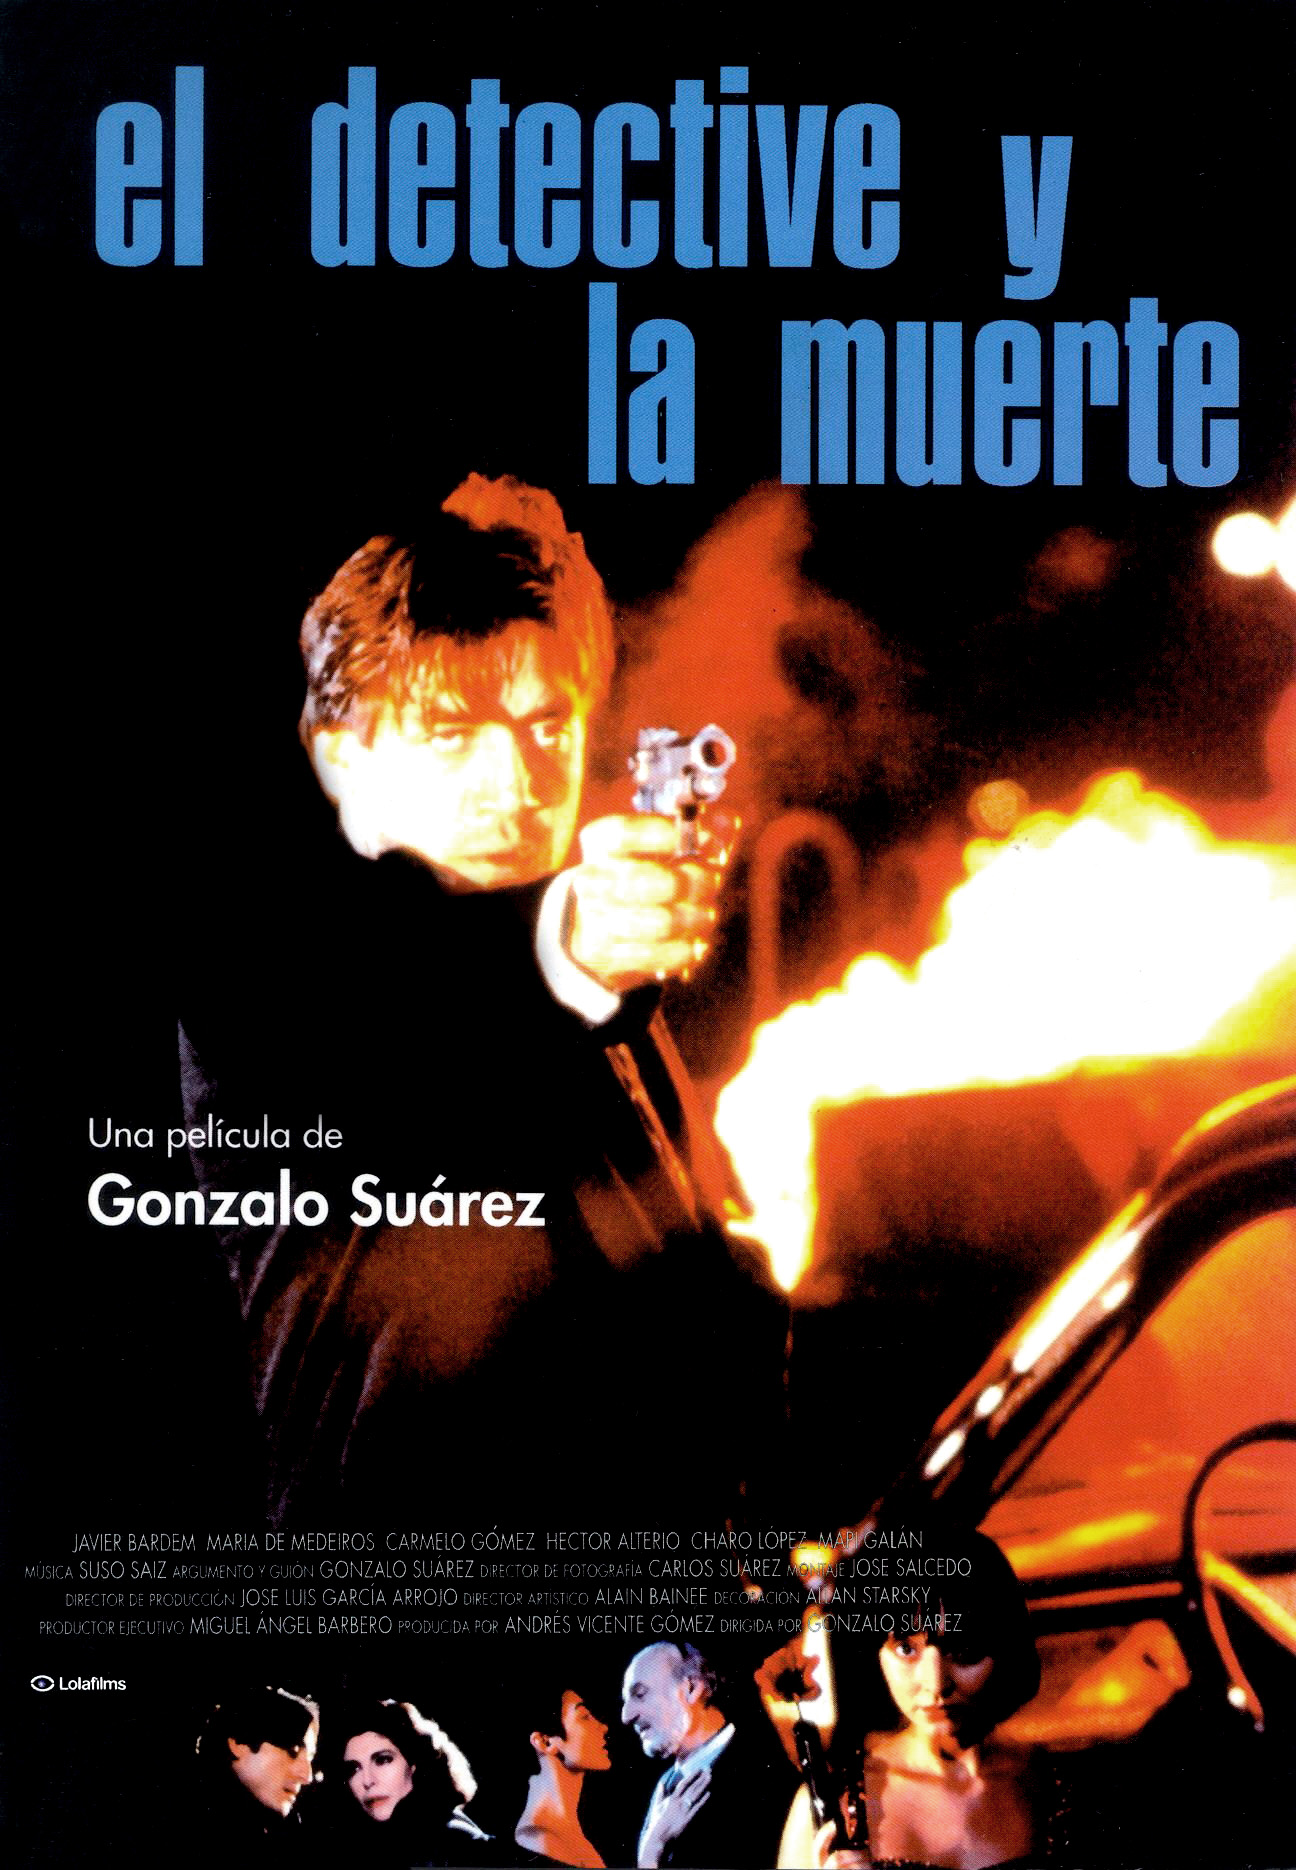 El detective y la muerte (1994) with English Subtitles on DVD on DVD